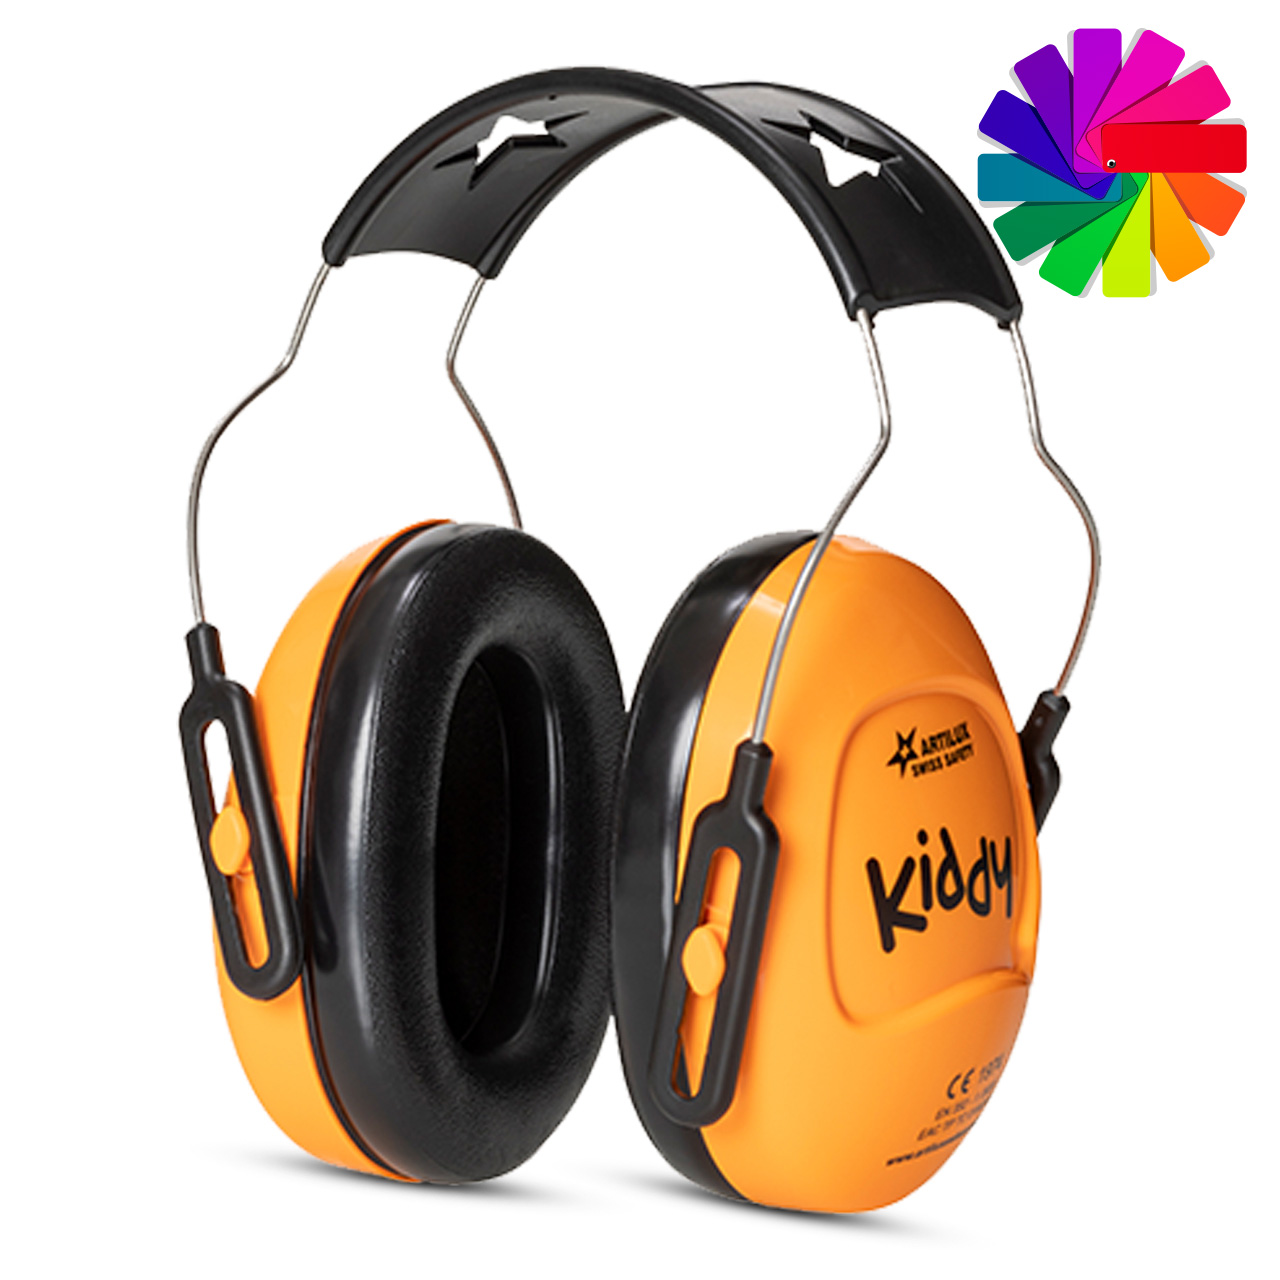 Kiddy Protection auditive pour enfants orange